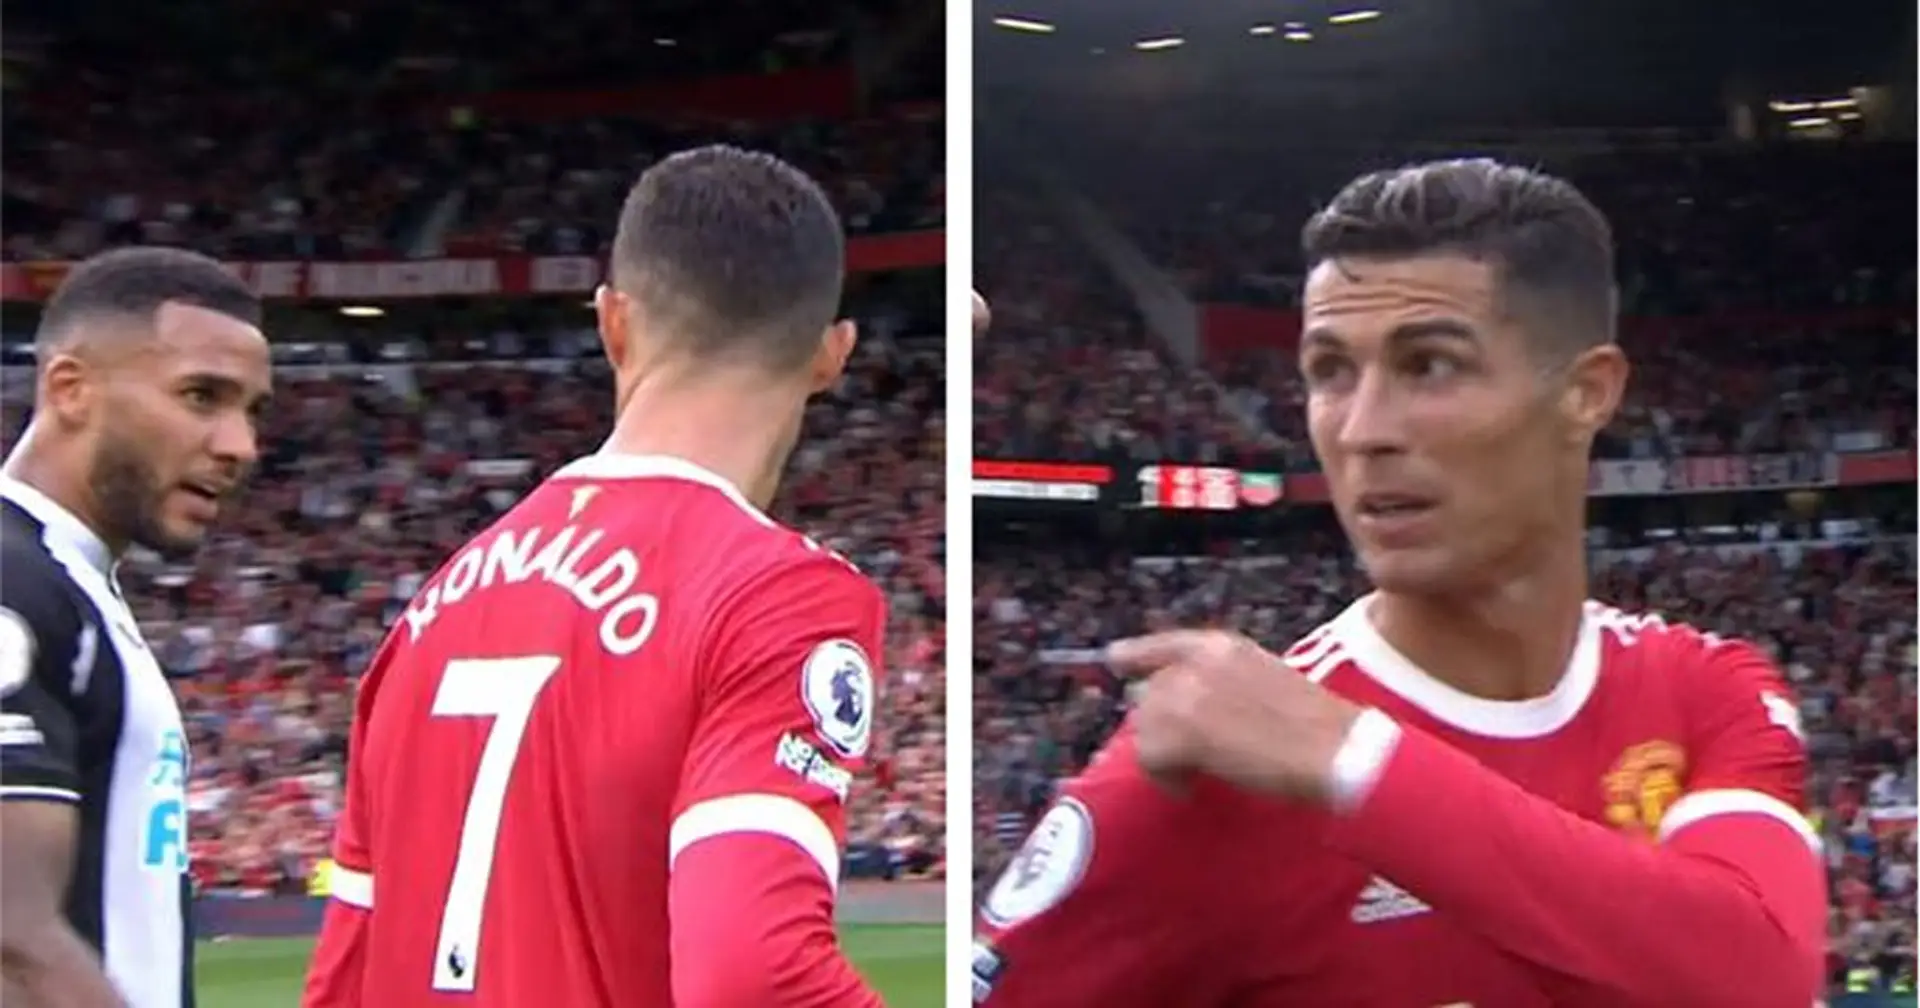 2 Newcastle-Spieler kommen auf Cristiano zu, um Trikots zu tauschen - Ronaldos Reaktion wurde vor der Kamera gefangen